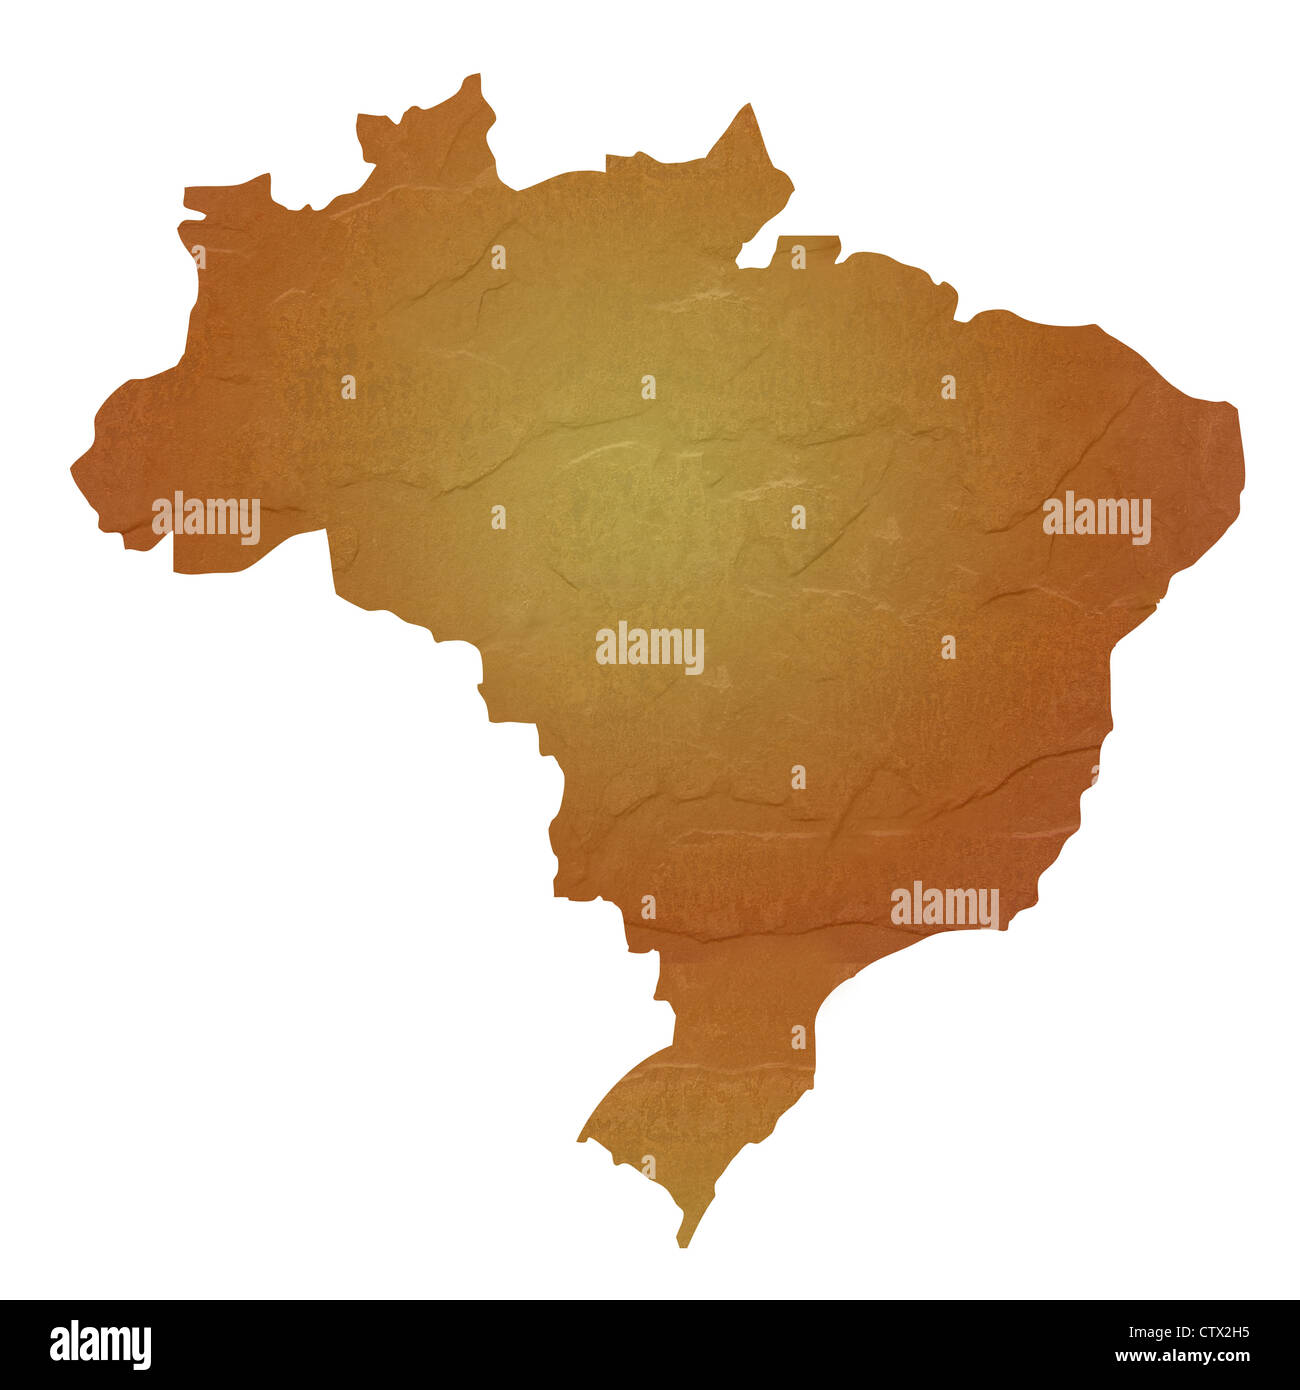 Mappa testurizzata del Brasile mappa marrone con sasso o pietra texture, isolato su sfondo bianco con percorso di clipping. Foto Stock